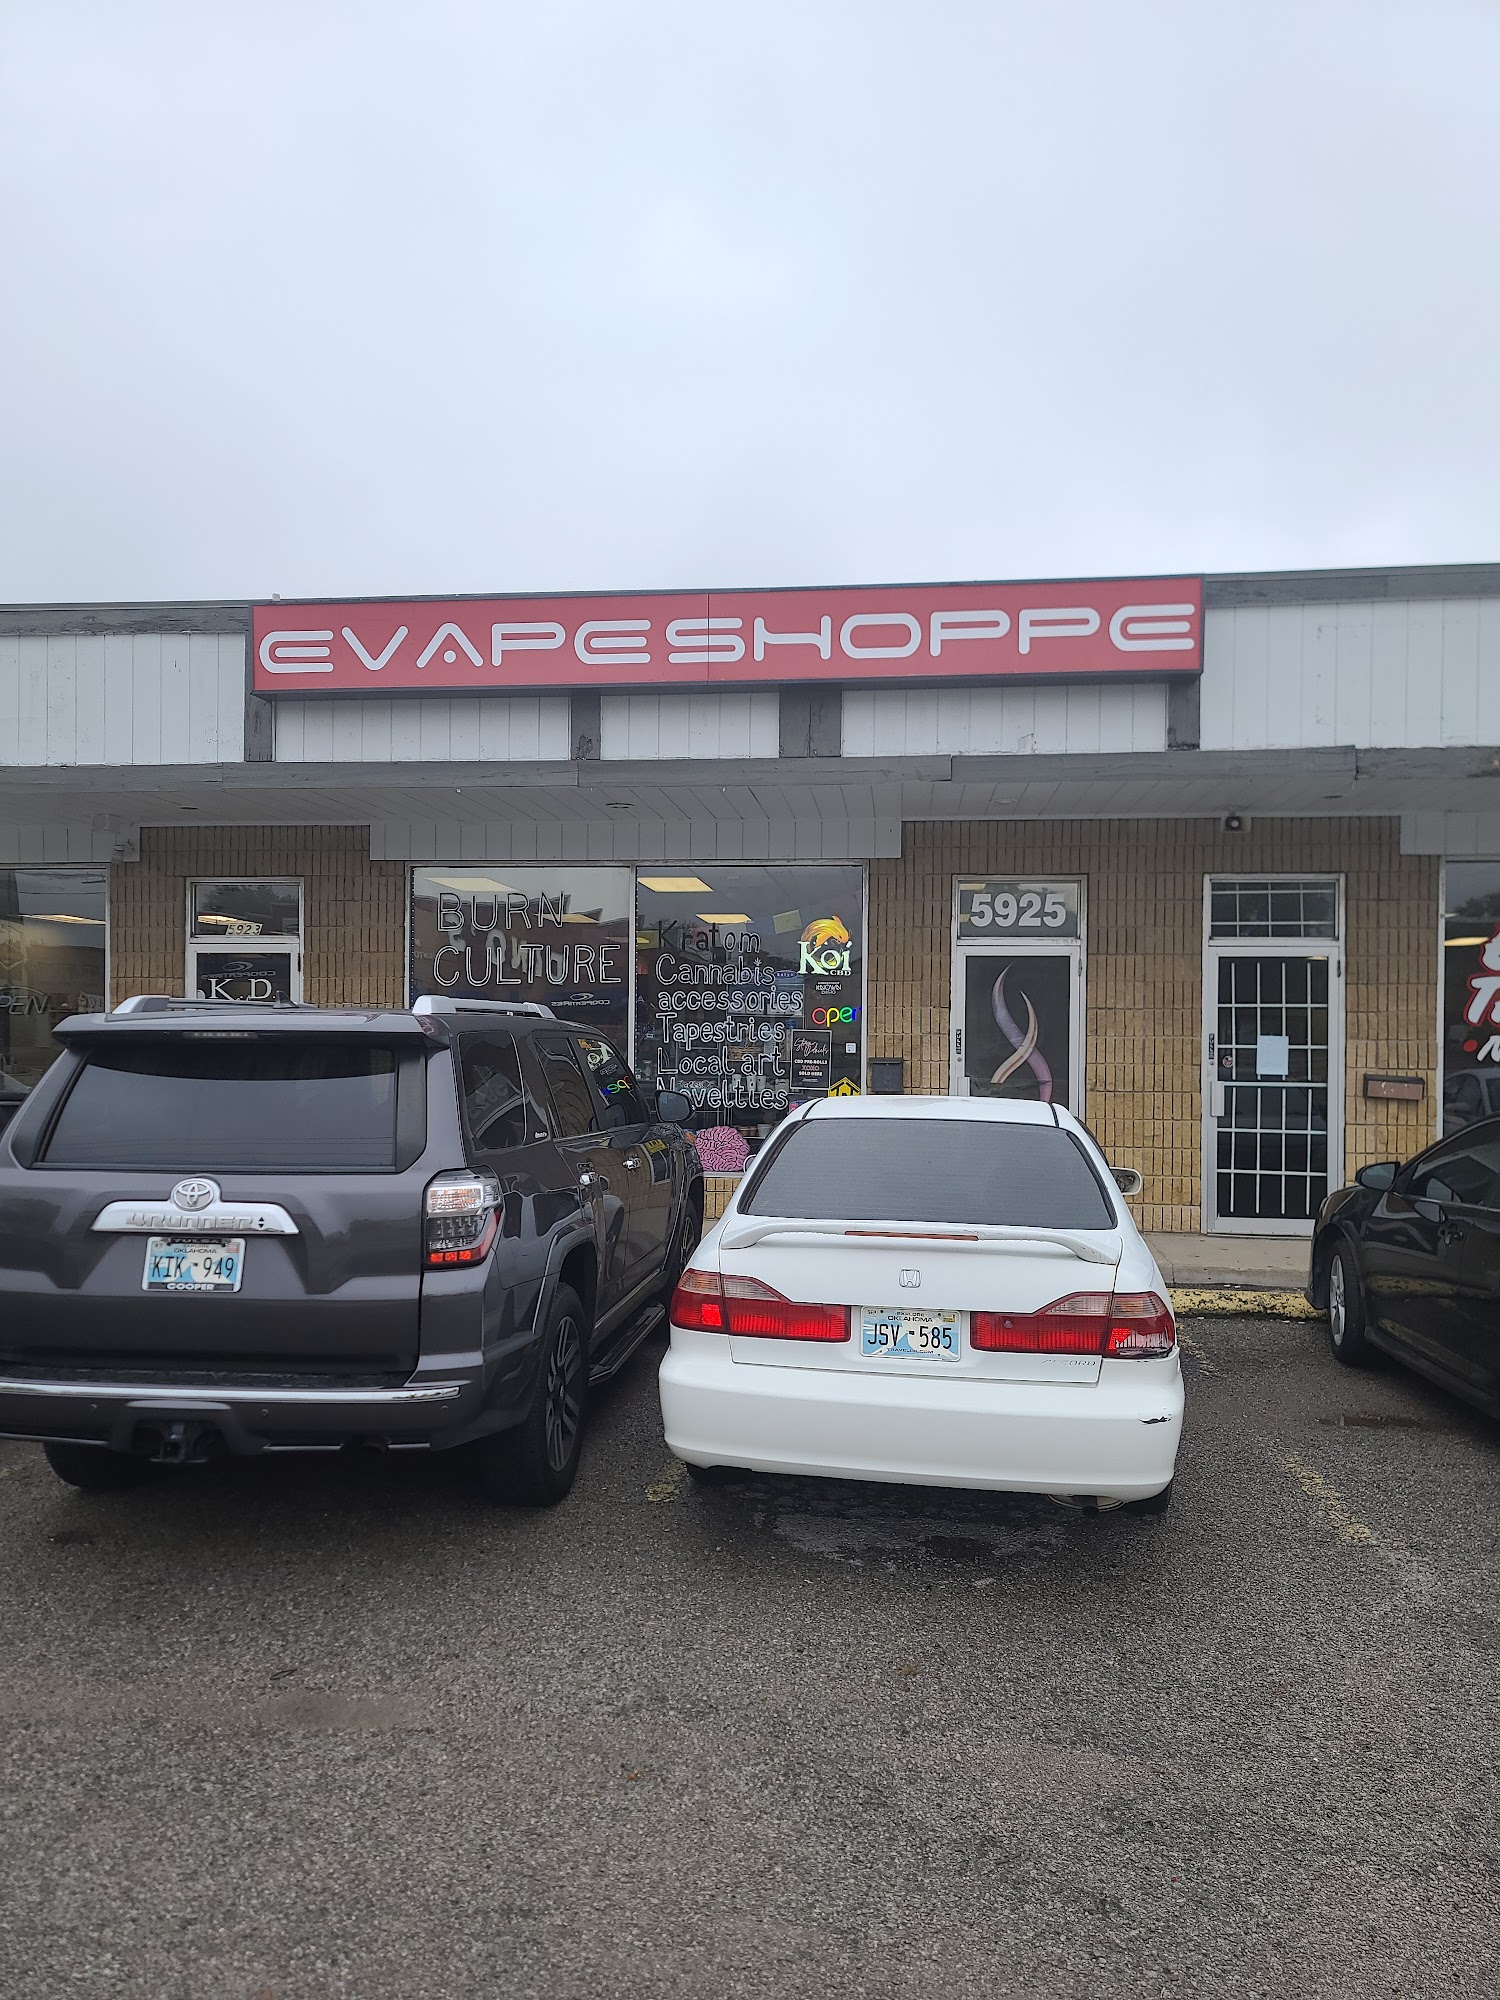 EVAPE Shoppe - A Vapor Store